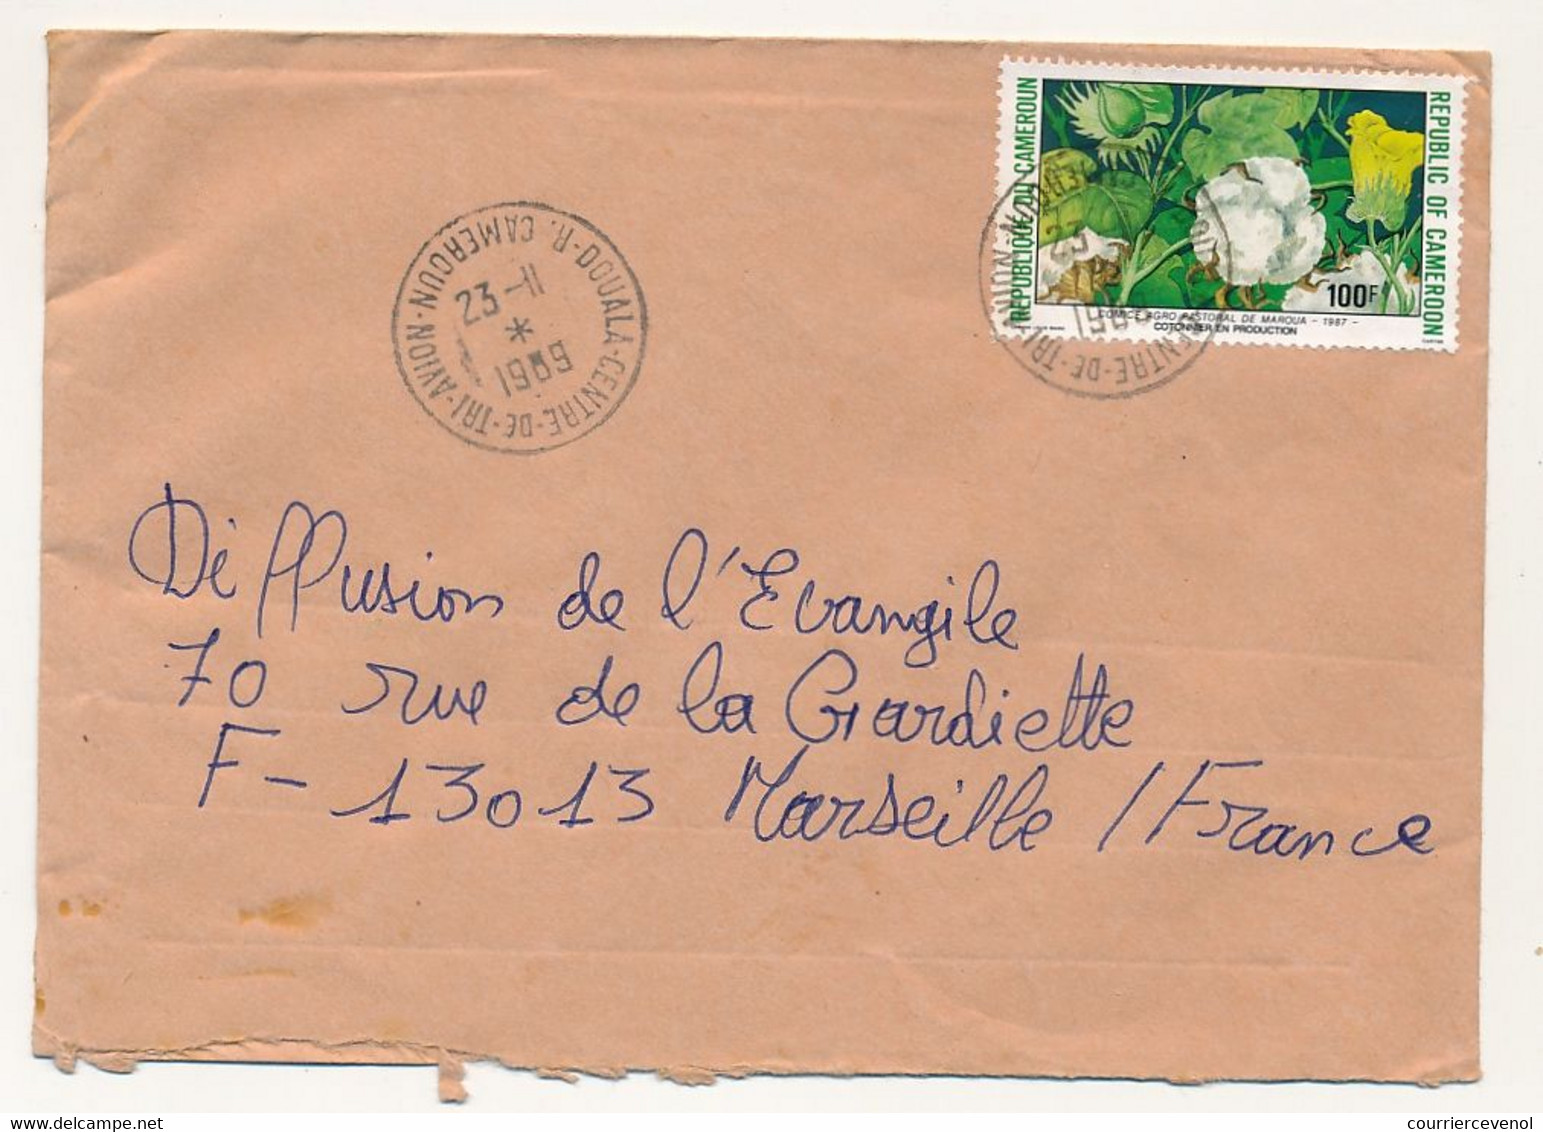 CAMEROUN => Enveloppe Douala Centre De Tri Avion Pour France, Affr. 100F Cotonnier - 23/11/1969 - Cameroon (1960-...)